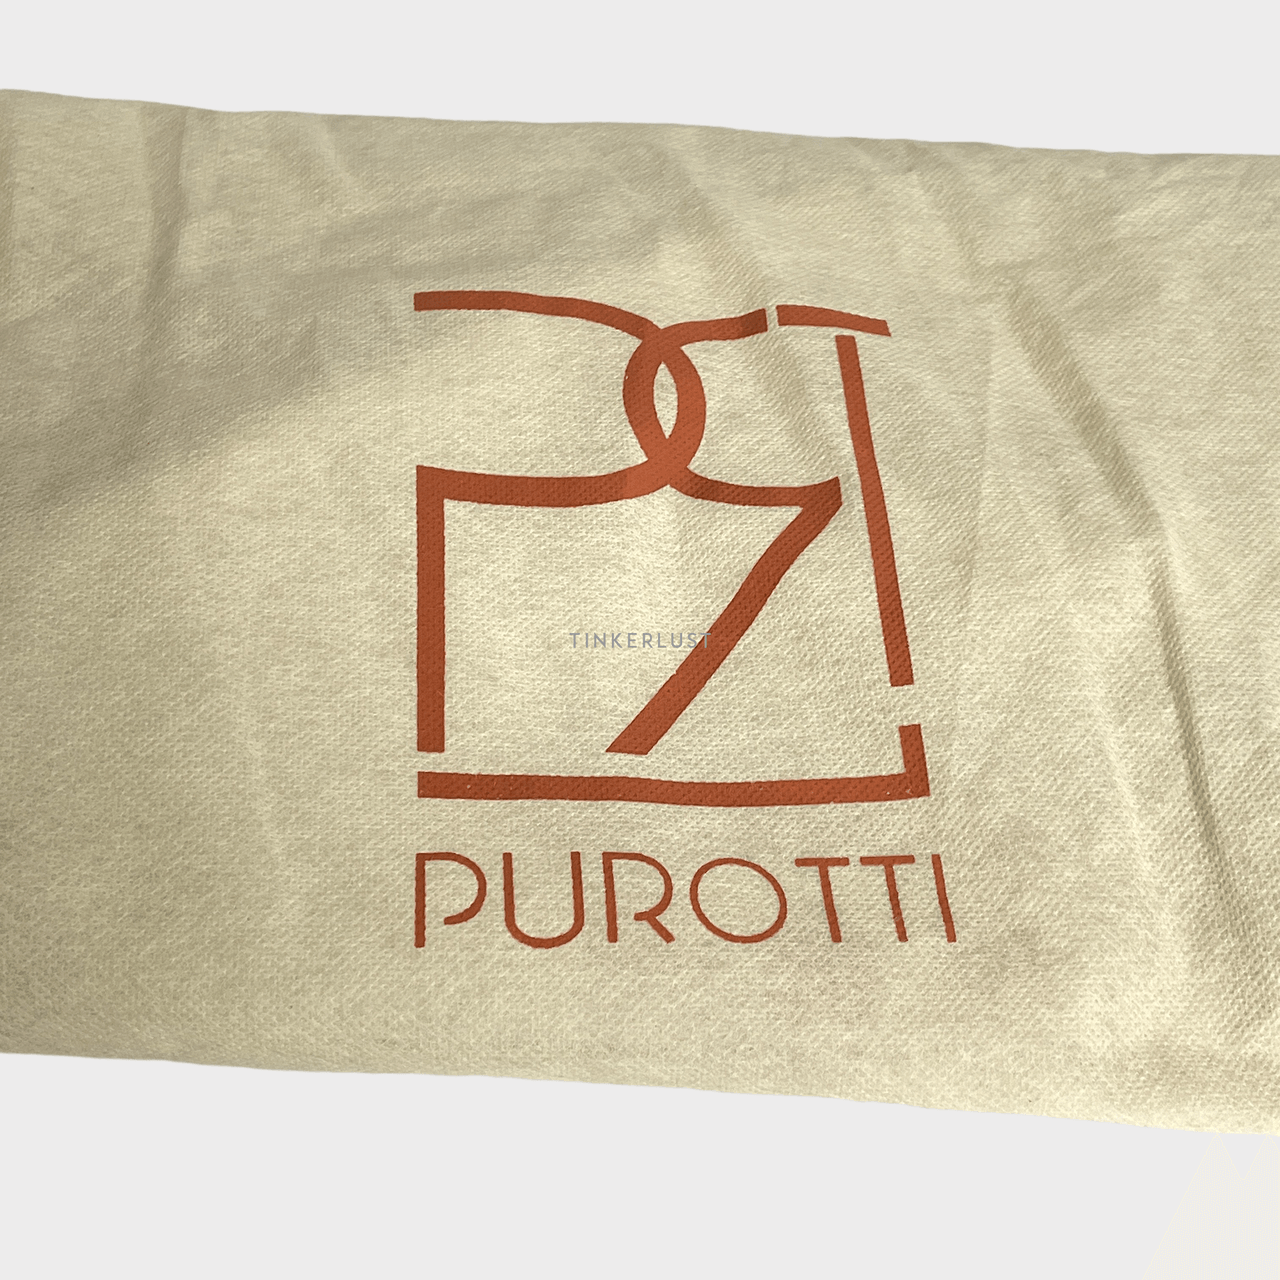 Purotti Cream & Maroon Backpack